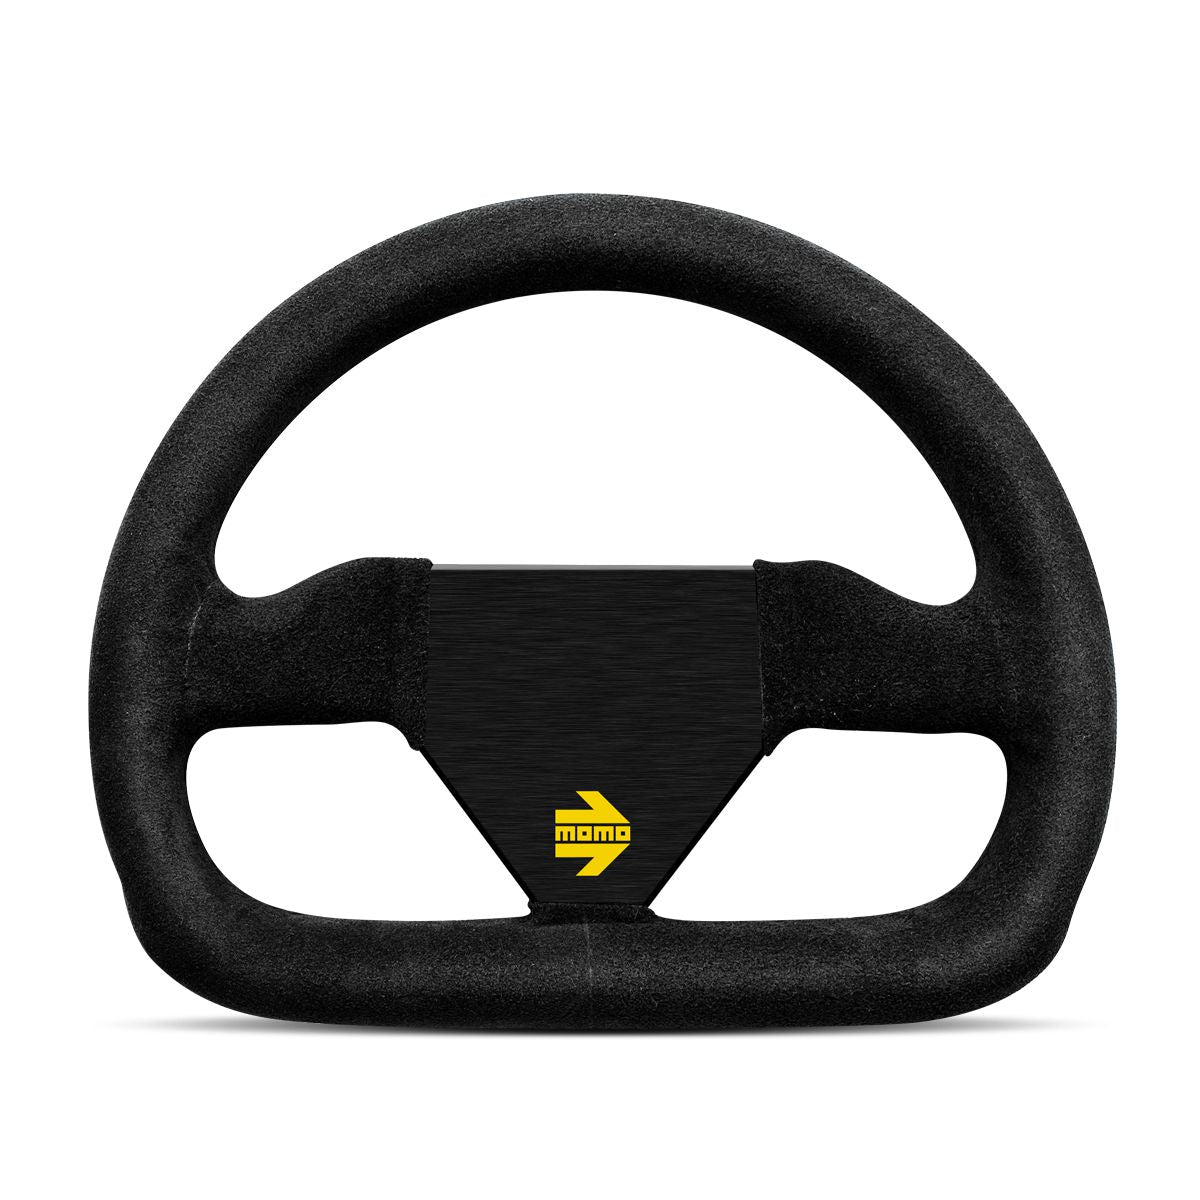 MOMO MOD.12 Black Suede Steering Wheel-Steering Wheel-MOMO-250mm-Black Suede-Brushed Black Anodized-Black Market UTV